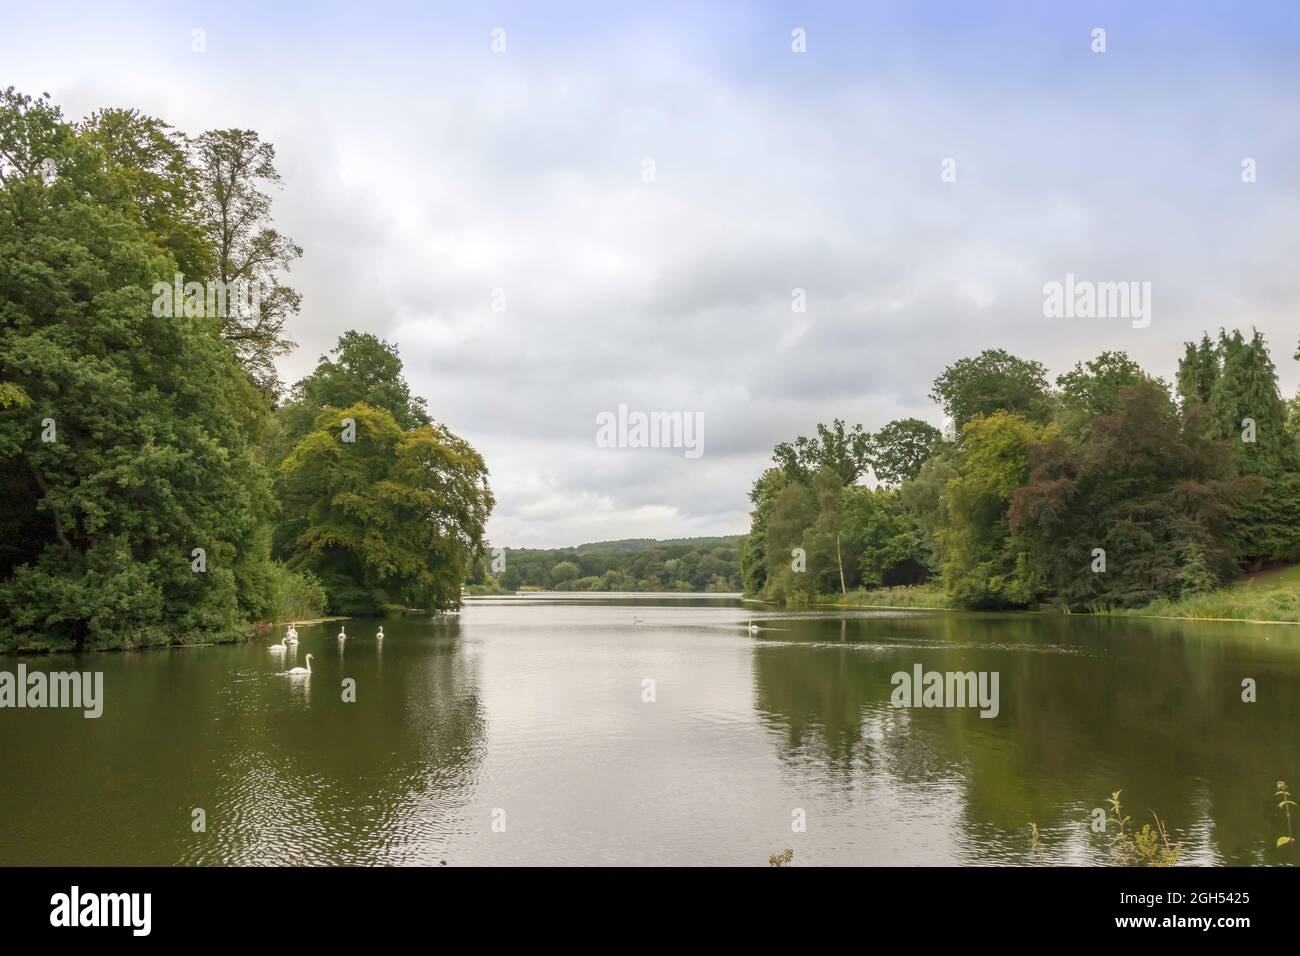 Paesaggio rurale con cigni che nuotano in un lago, circondato da alberi. Foto Stock